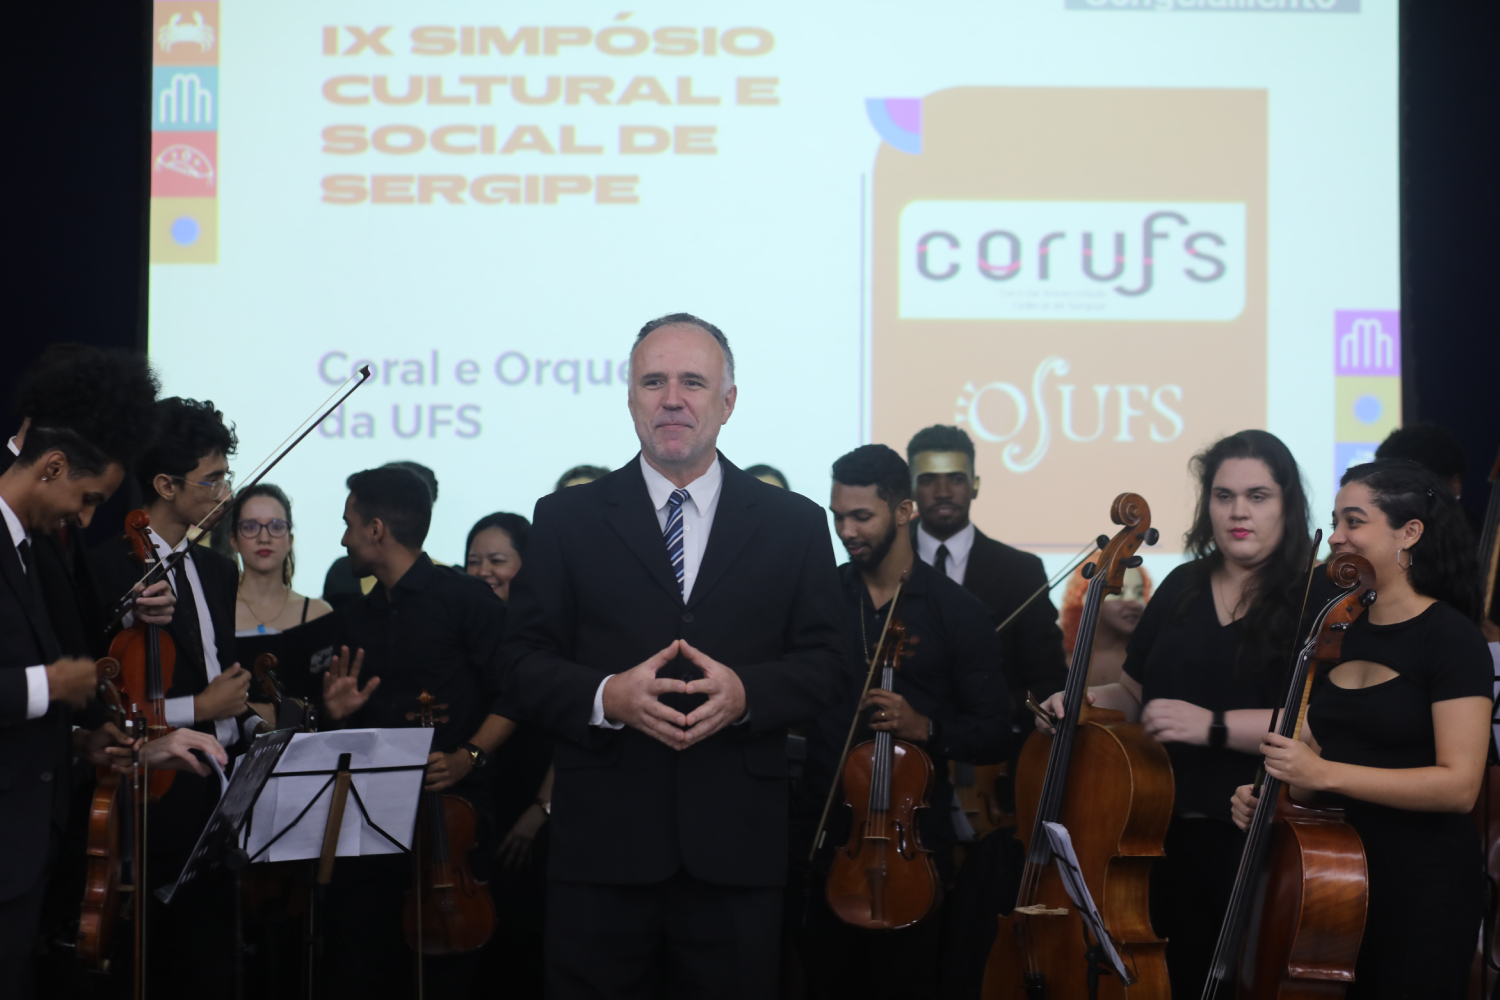 Ion Bressan é regente da Orquestra Sifônica da UFS. (Foto: Schirlene Reis/Ascom UFS)